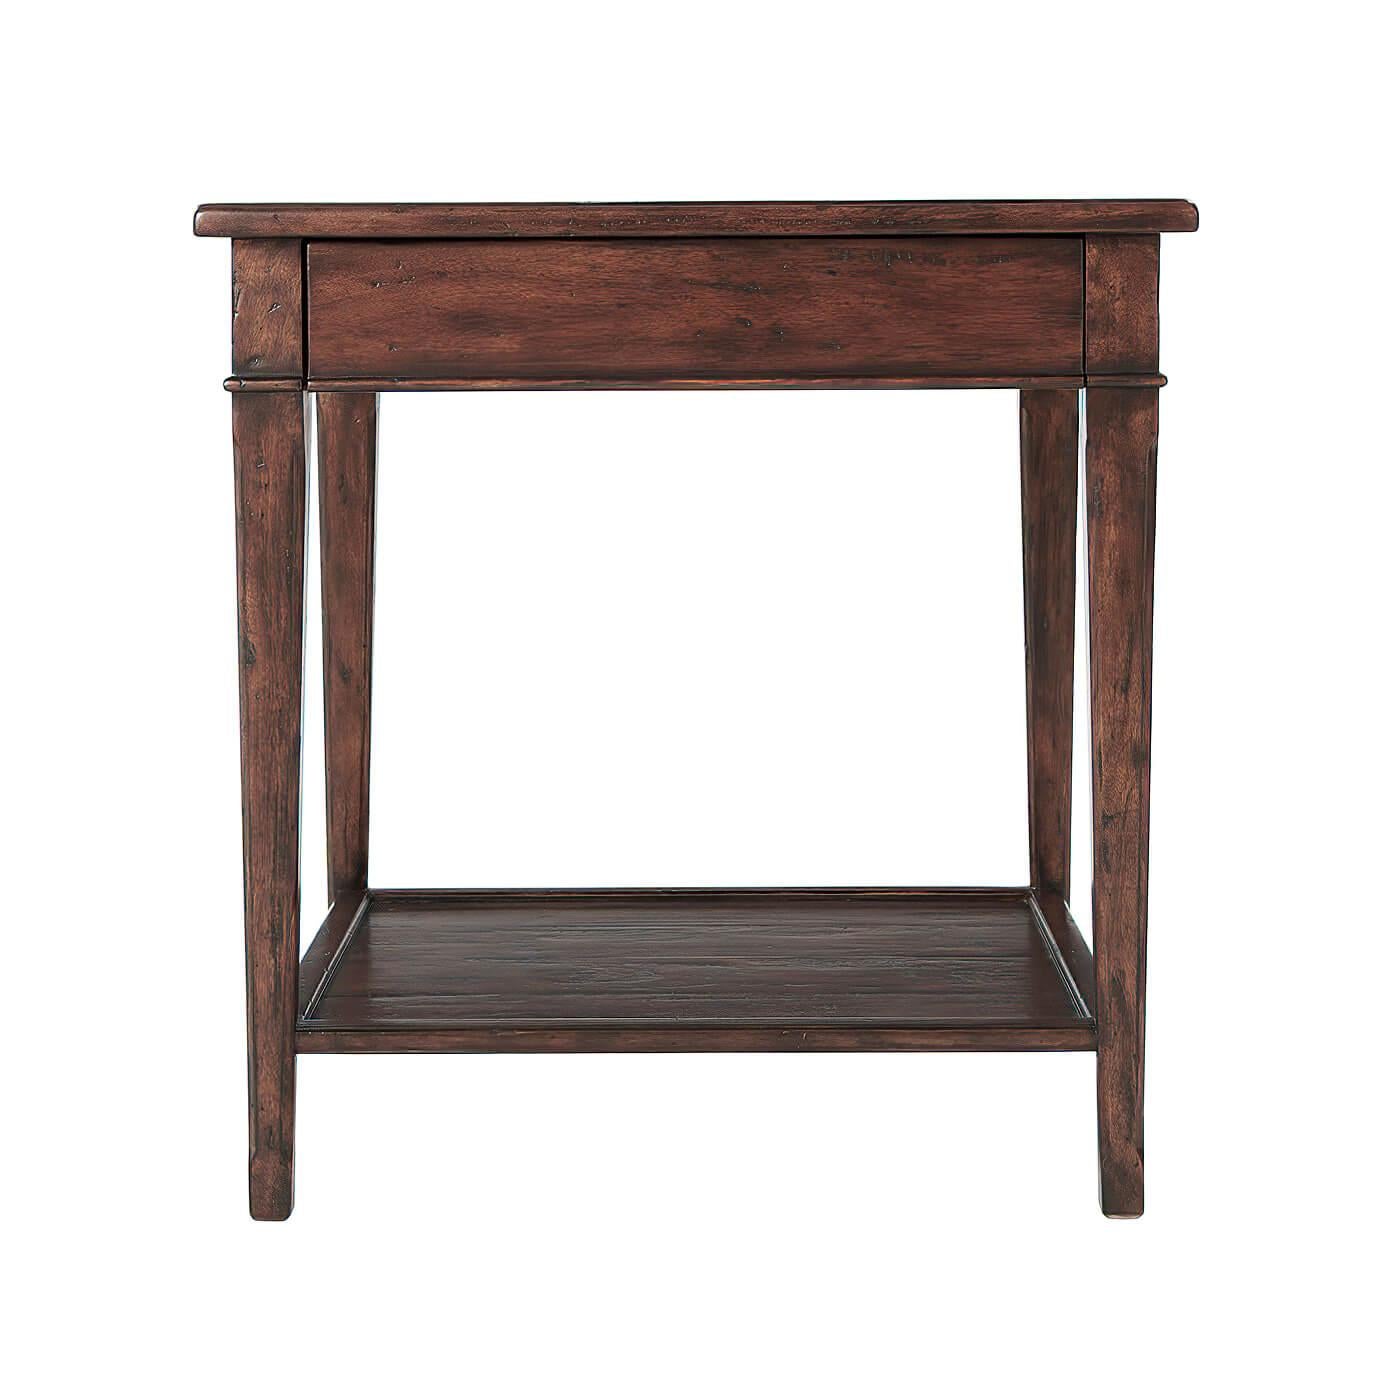 Table de chevet ou d'appoint de style provincial français, en bois rustique vieilli, avec un tiroir en frise et les pieds carrés effilés réunis par un étage inférieur. 

Dimensions : 26